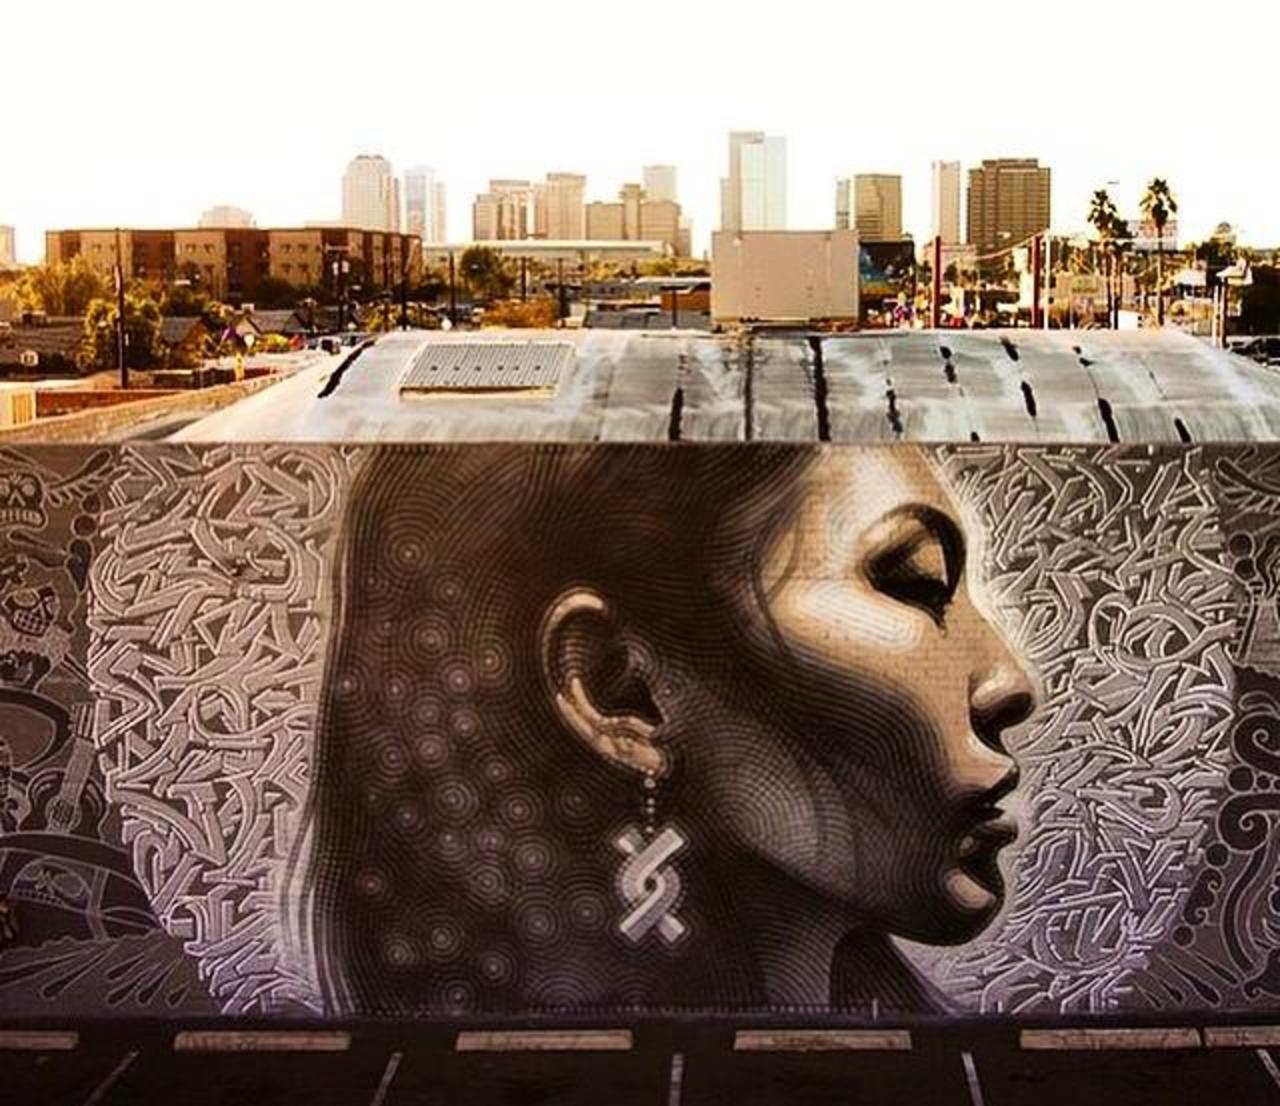 Latest Street Art work by El Mac in Phoenix, Arizona

#art #mural #graffiti #streetart http://t.co/YHFG6qauc2